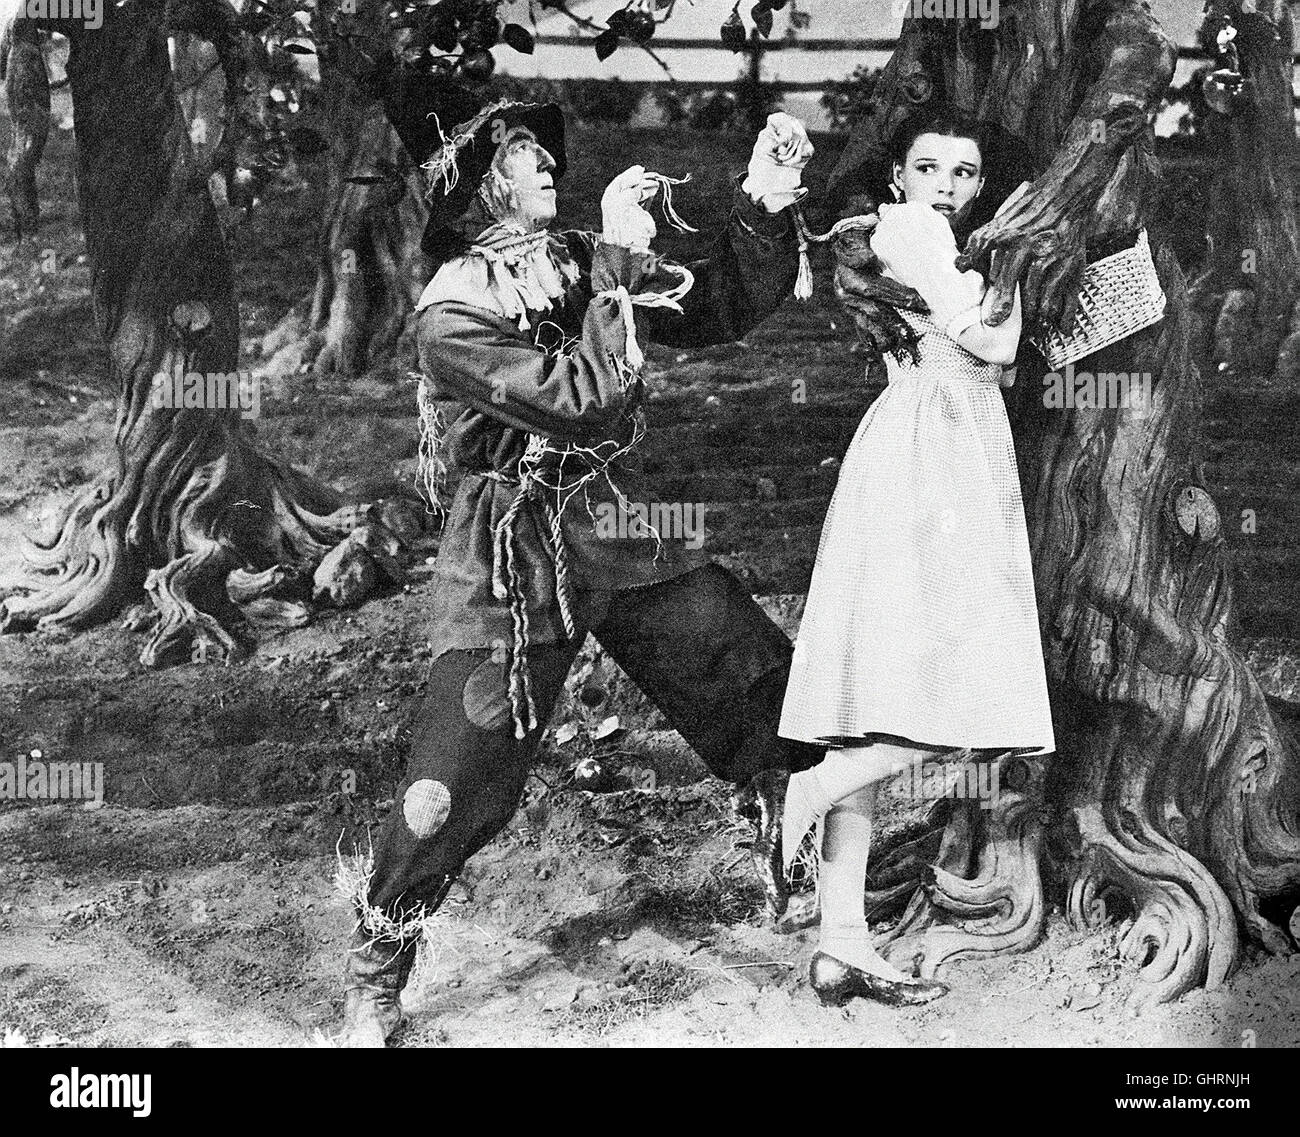 DAS ZAUBERHAFTE LAND -Der Zauberer von Oz The Wizard of Oz USA 1939 JACK HALEY, JUDY GARLAND Regie: VICTOR FLEMING aka. Wizard of OZ Stock Photo